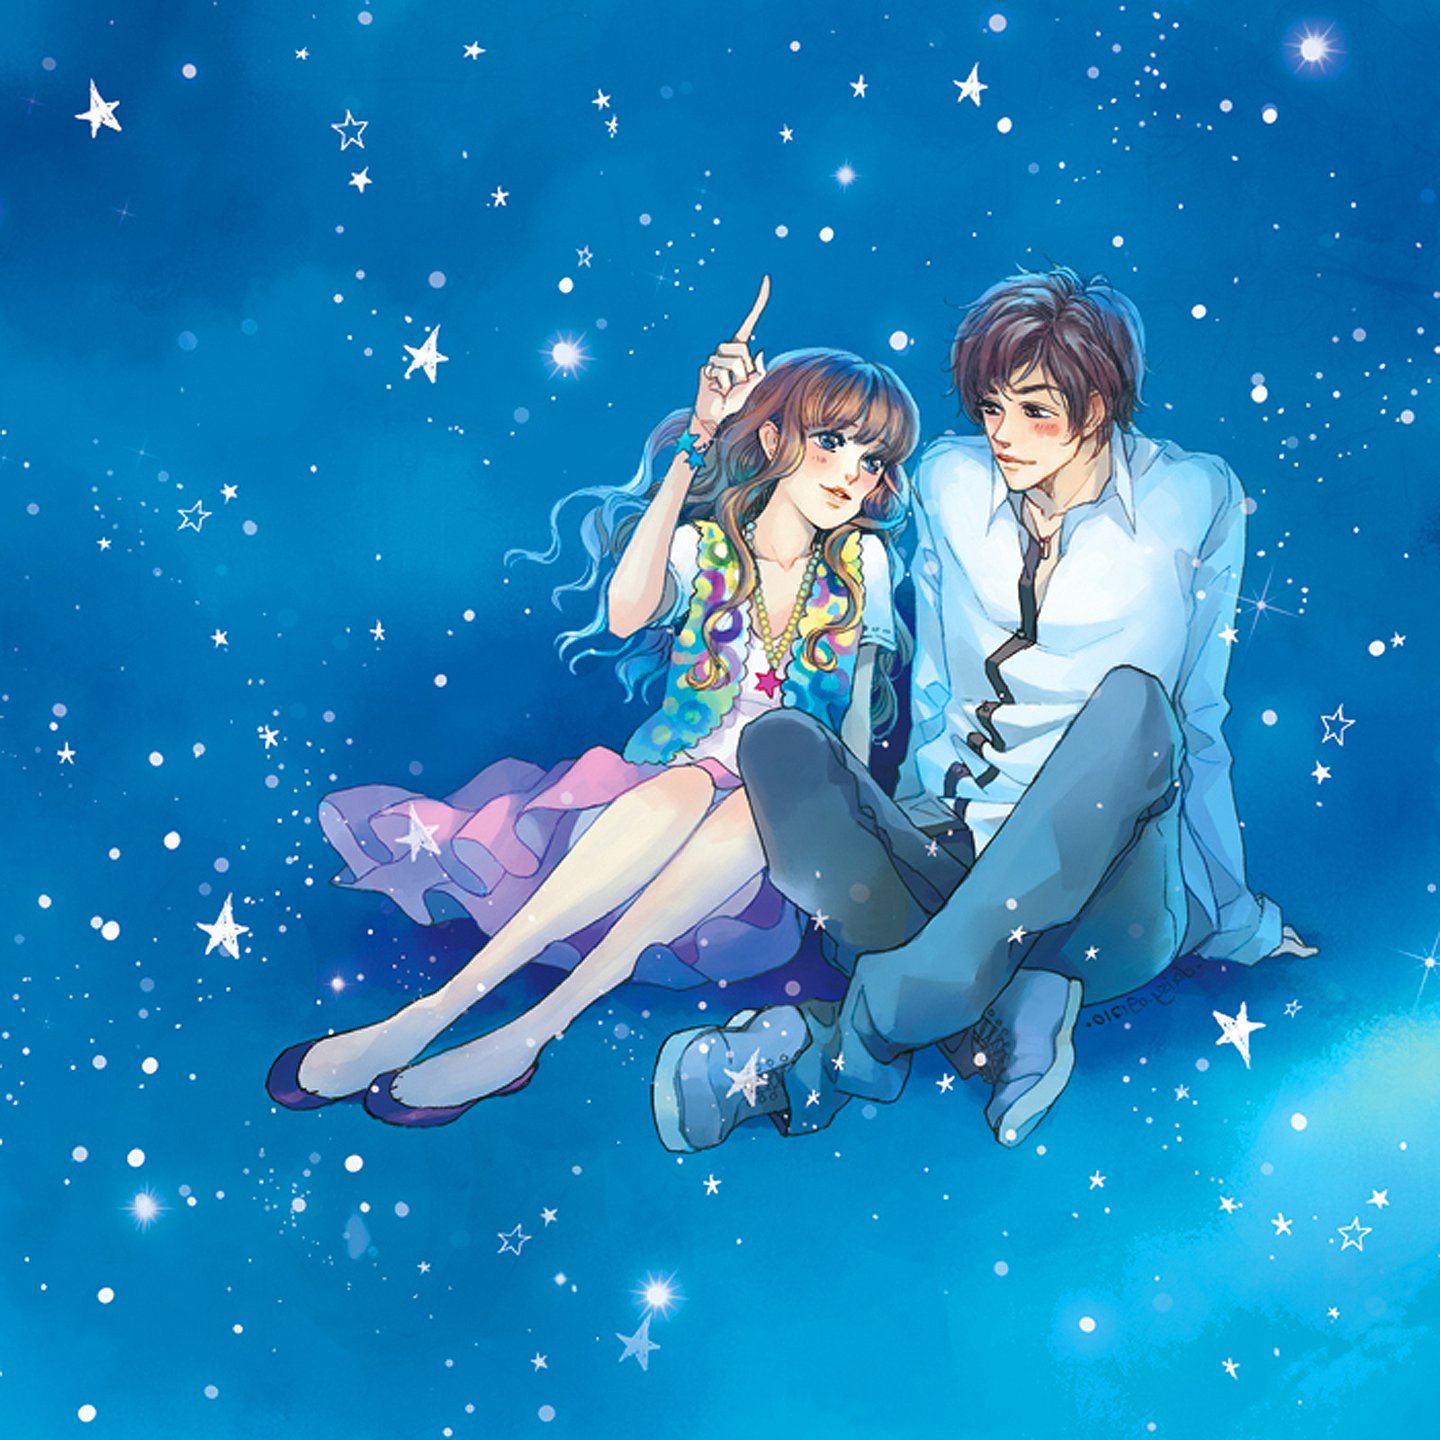 sky, Love, Blue, Romantic, Couple, Blue, Eyes, Girl, Boy, Anime, Stars Wallpaper